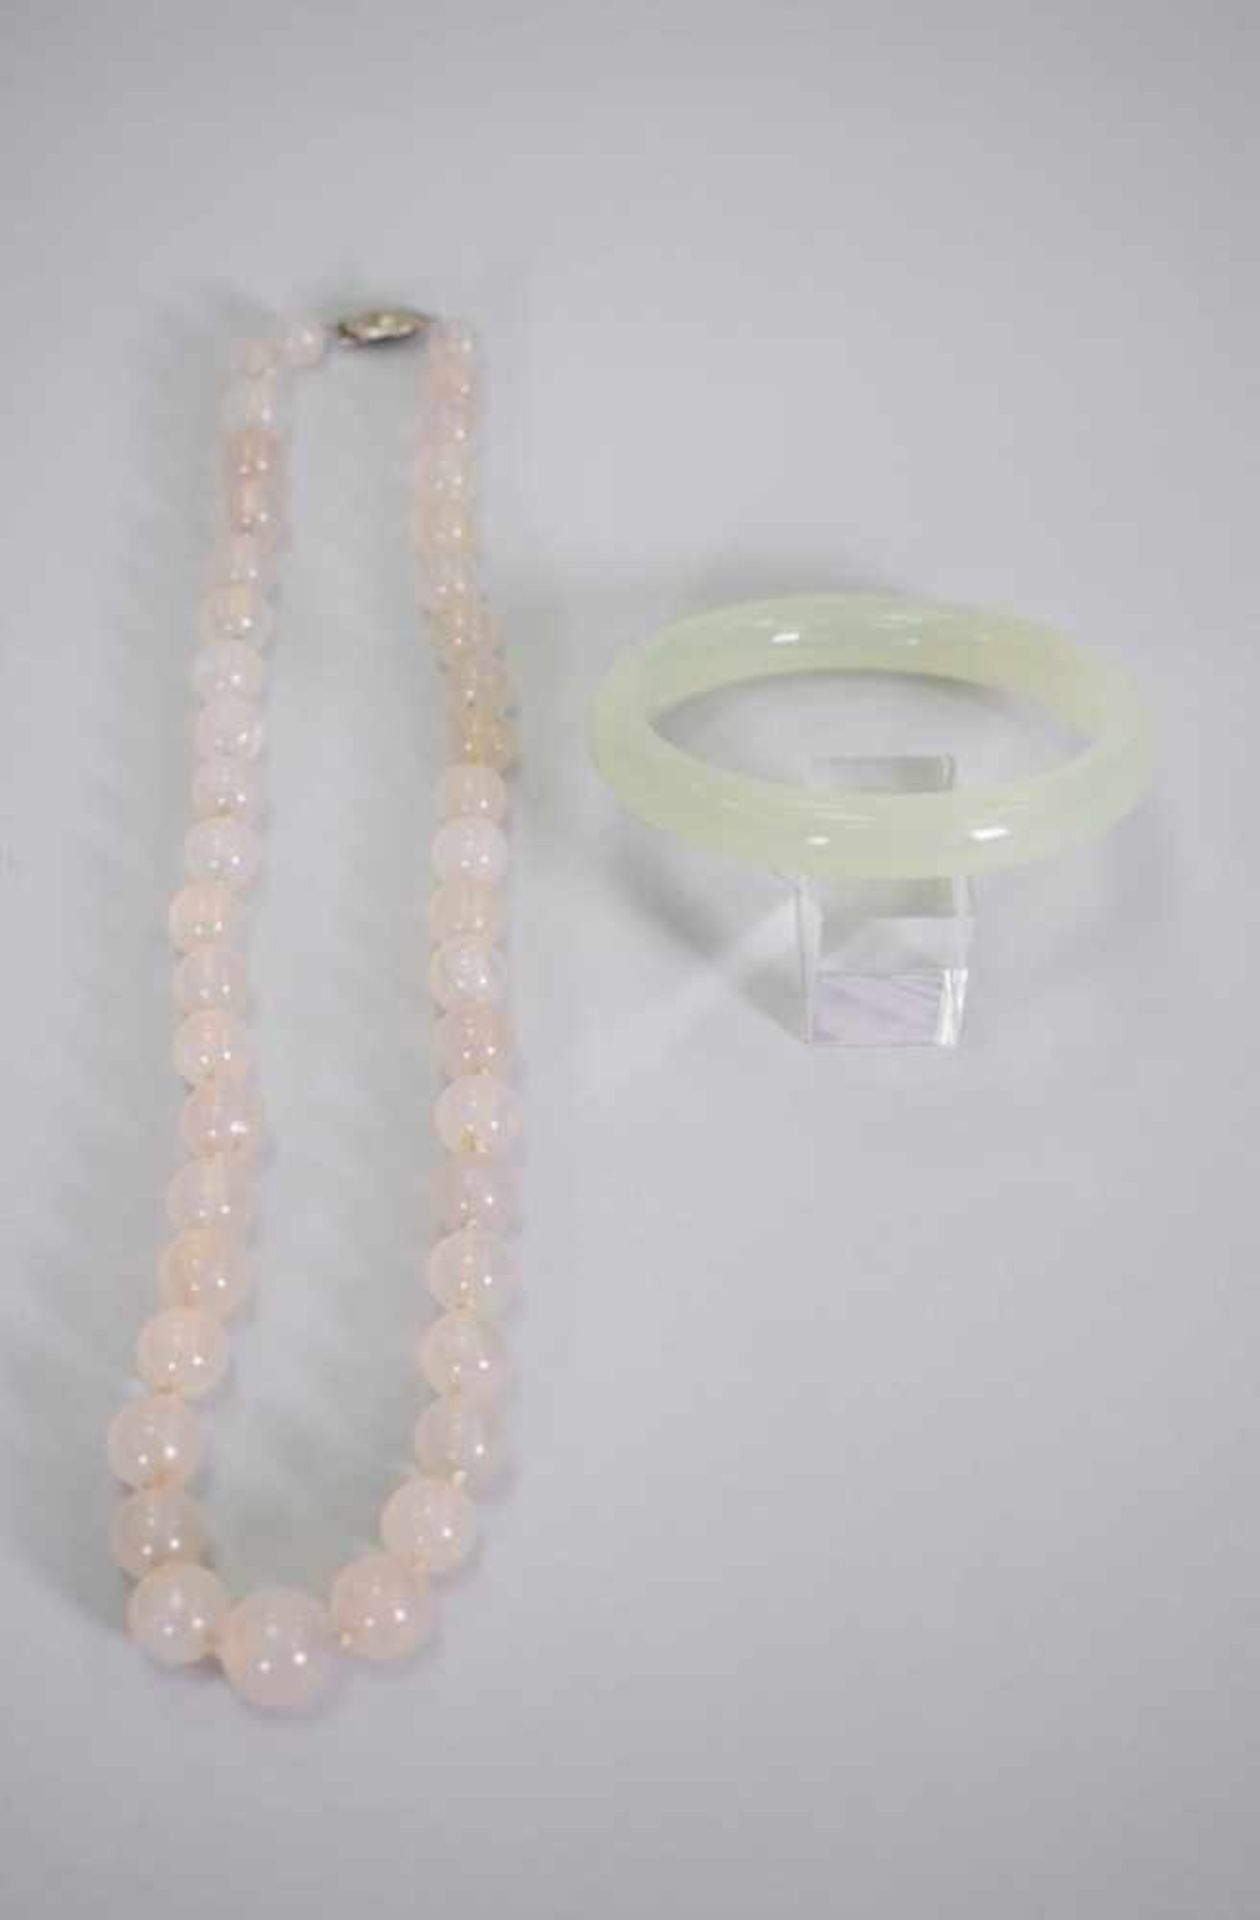 Set Jade Armreif und PerlenketteArmreif und Perlenkette aus Jadestein, Maße: Durchmesser 6 cm, Länge